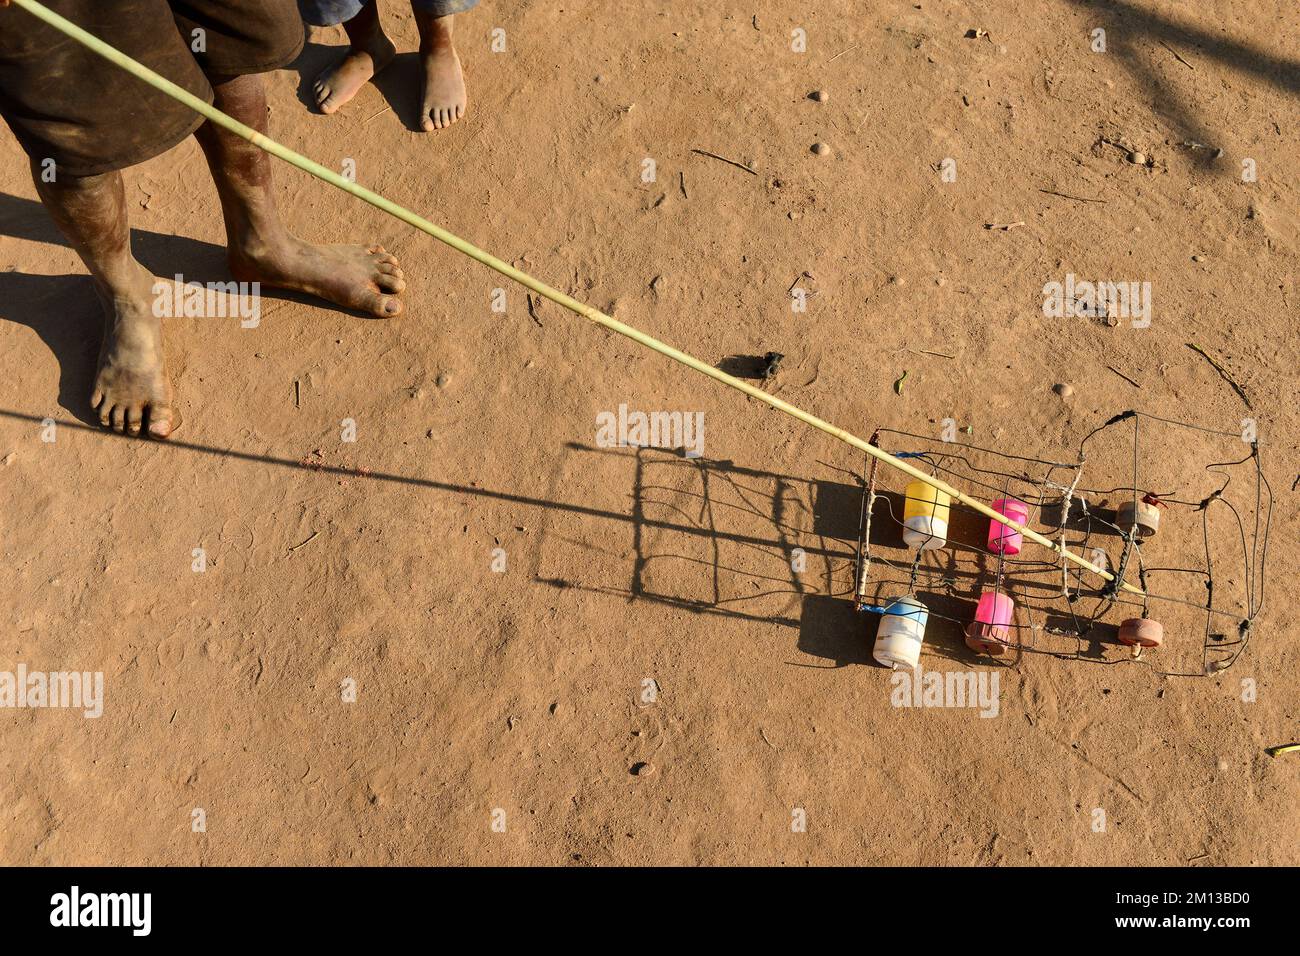 MALAWI, Thyolo, villaggio Samuti, bambini con auto giocattolo autofabbricate / Kinder mit selbstgebasteltem Spielzeug Foto Stock